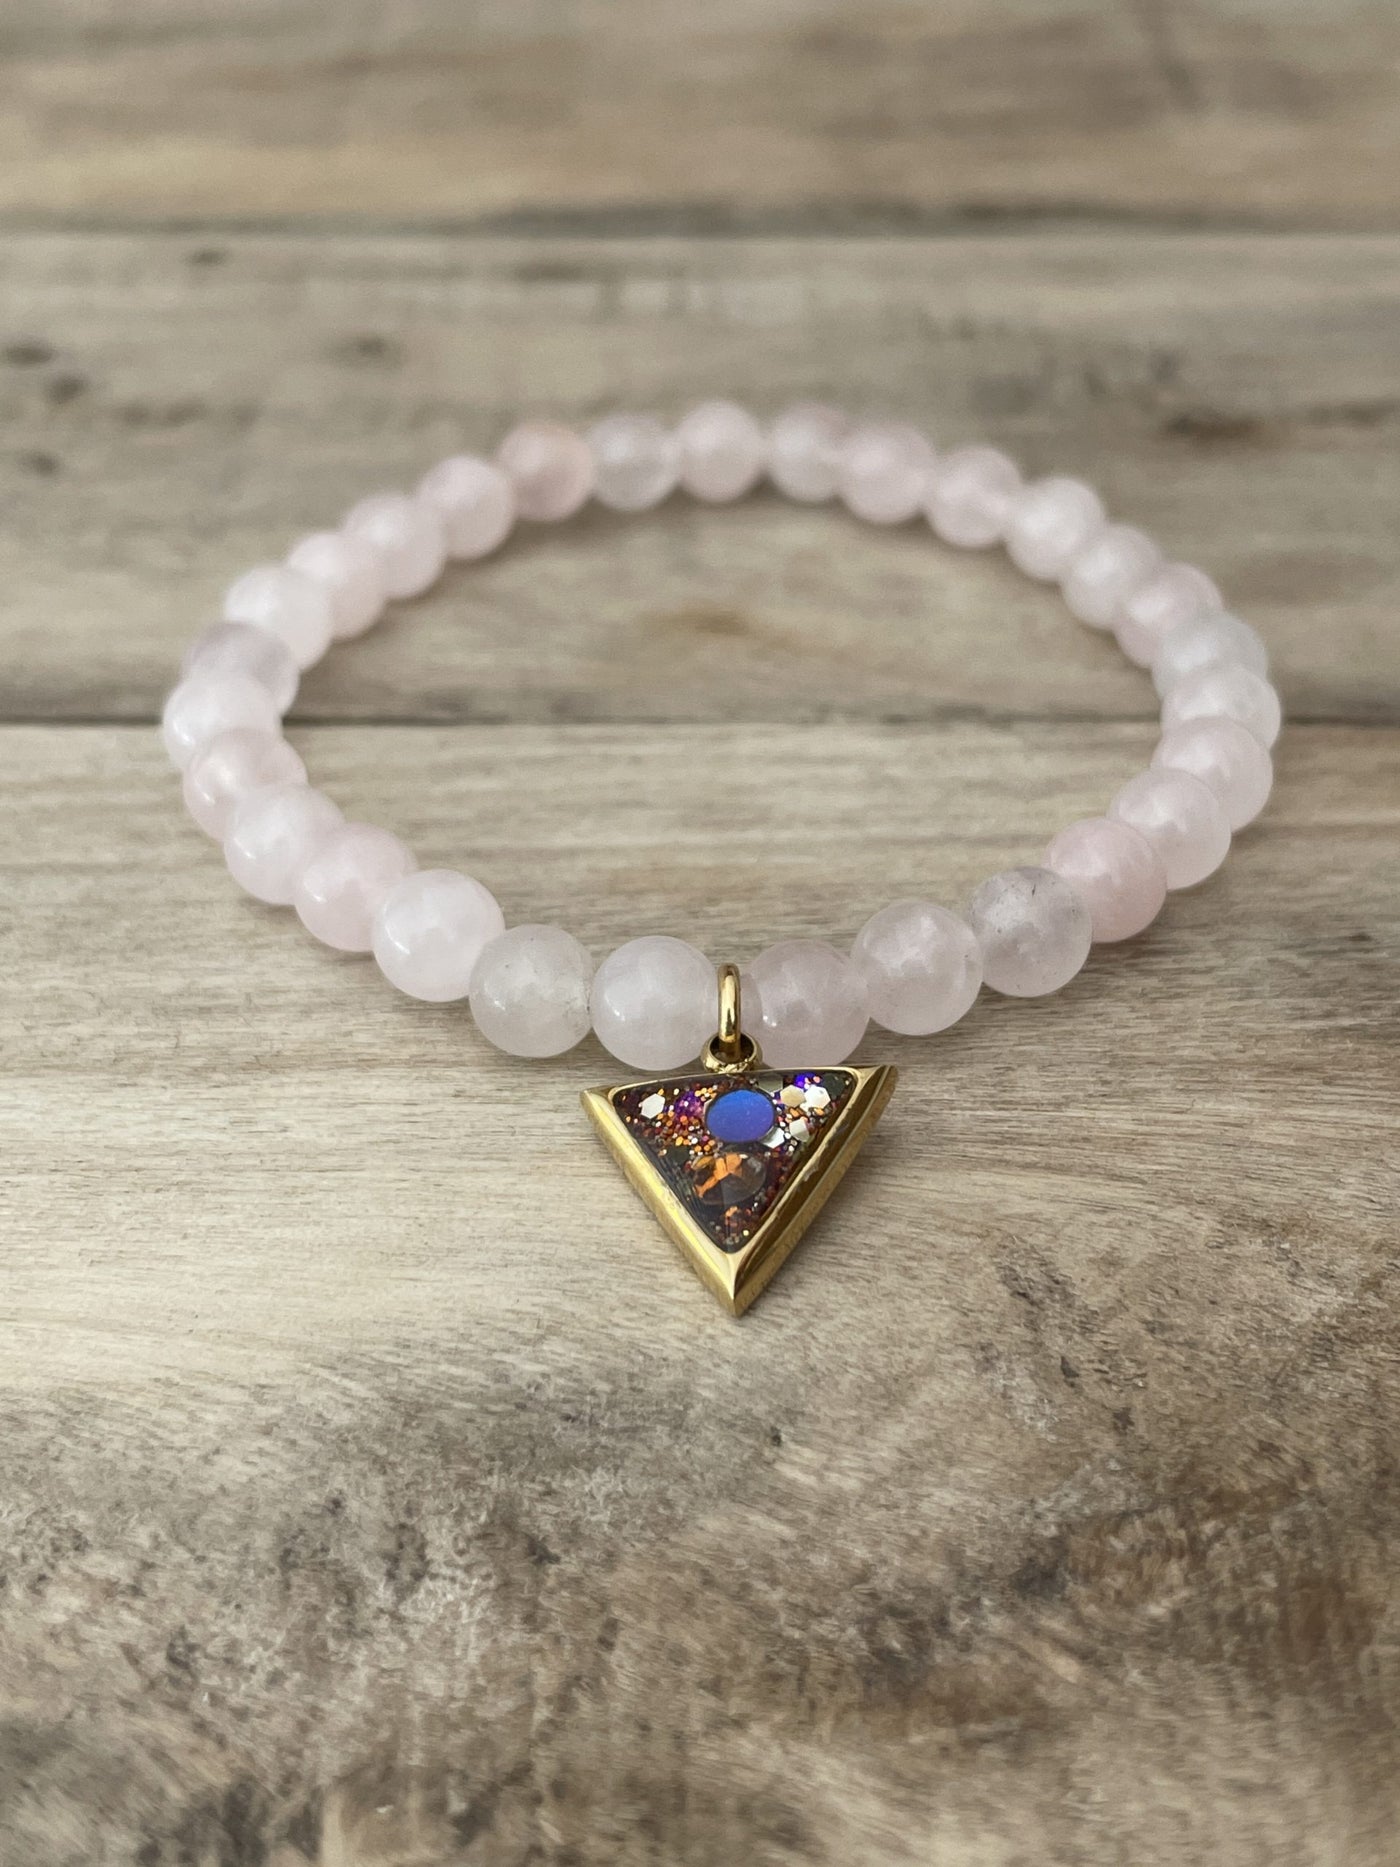 Golden bracelet rose quartz beads Sacral chakra reset